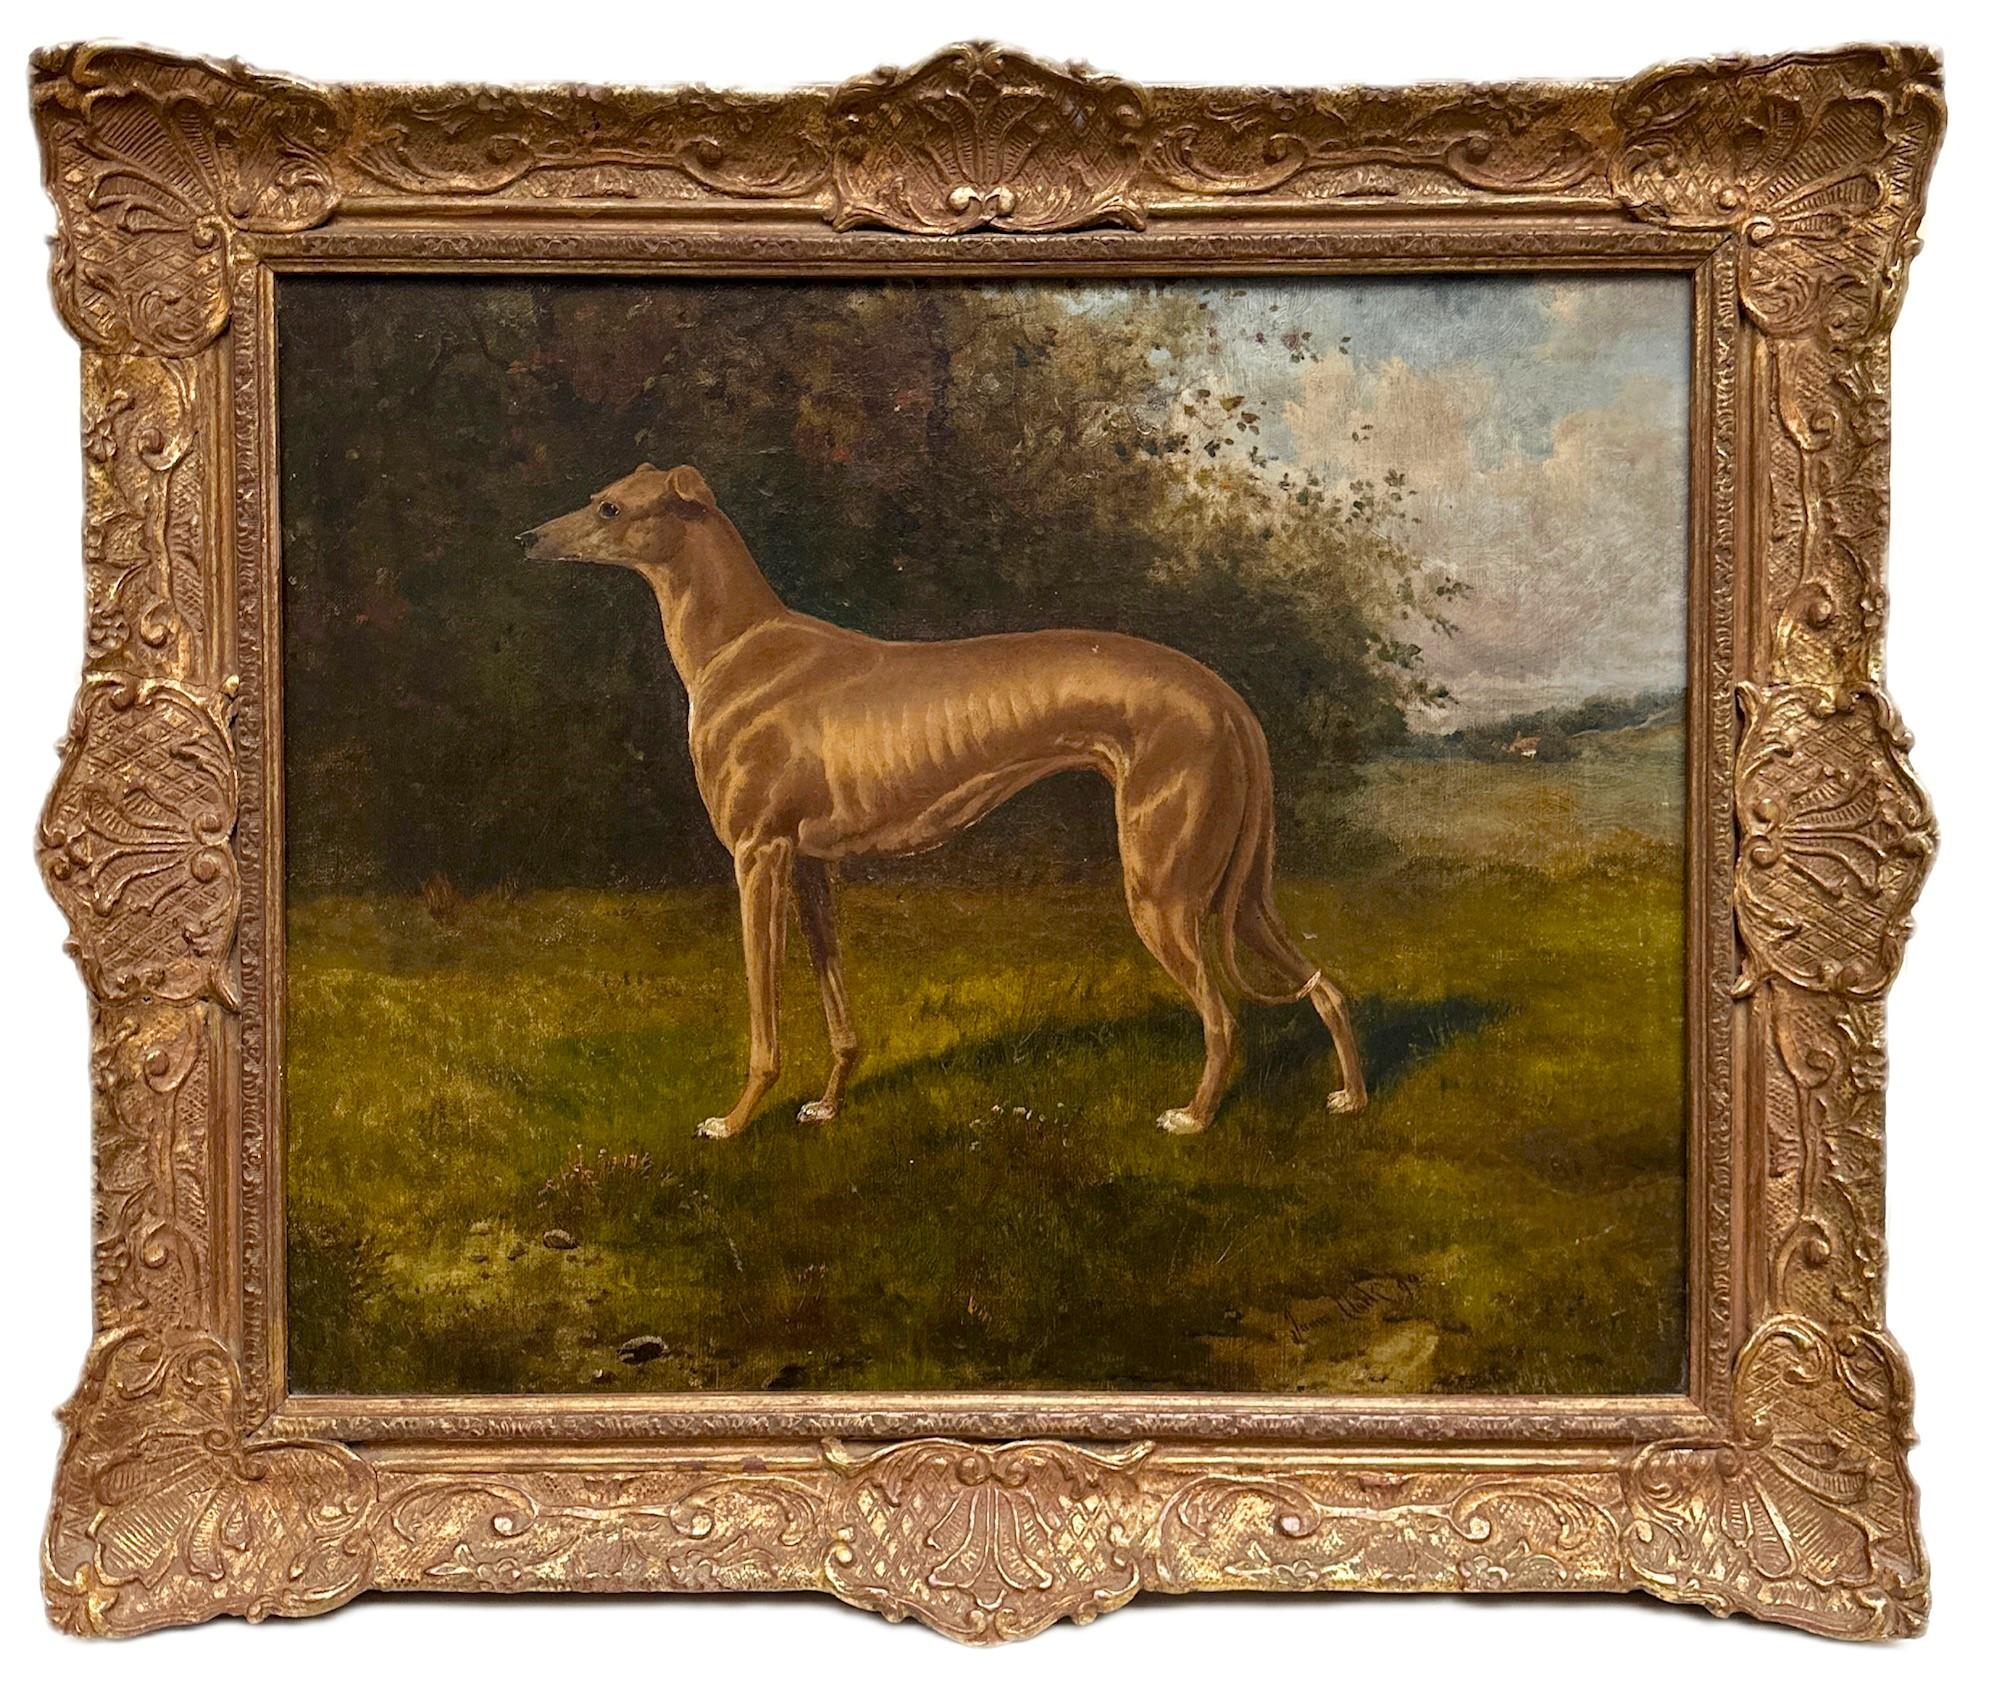 Portrait Painting James Albert Clark - Un portrait d'un chien lévrier dans un paysage verdoyant du 19e siècle, signé